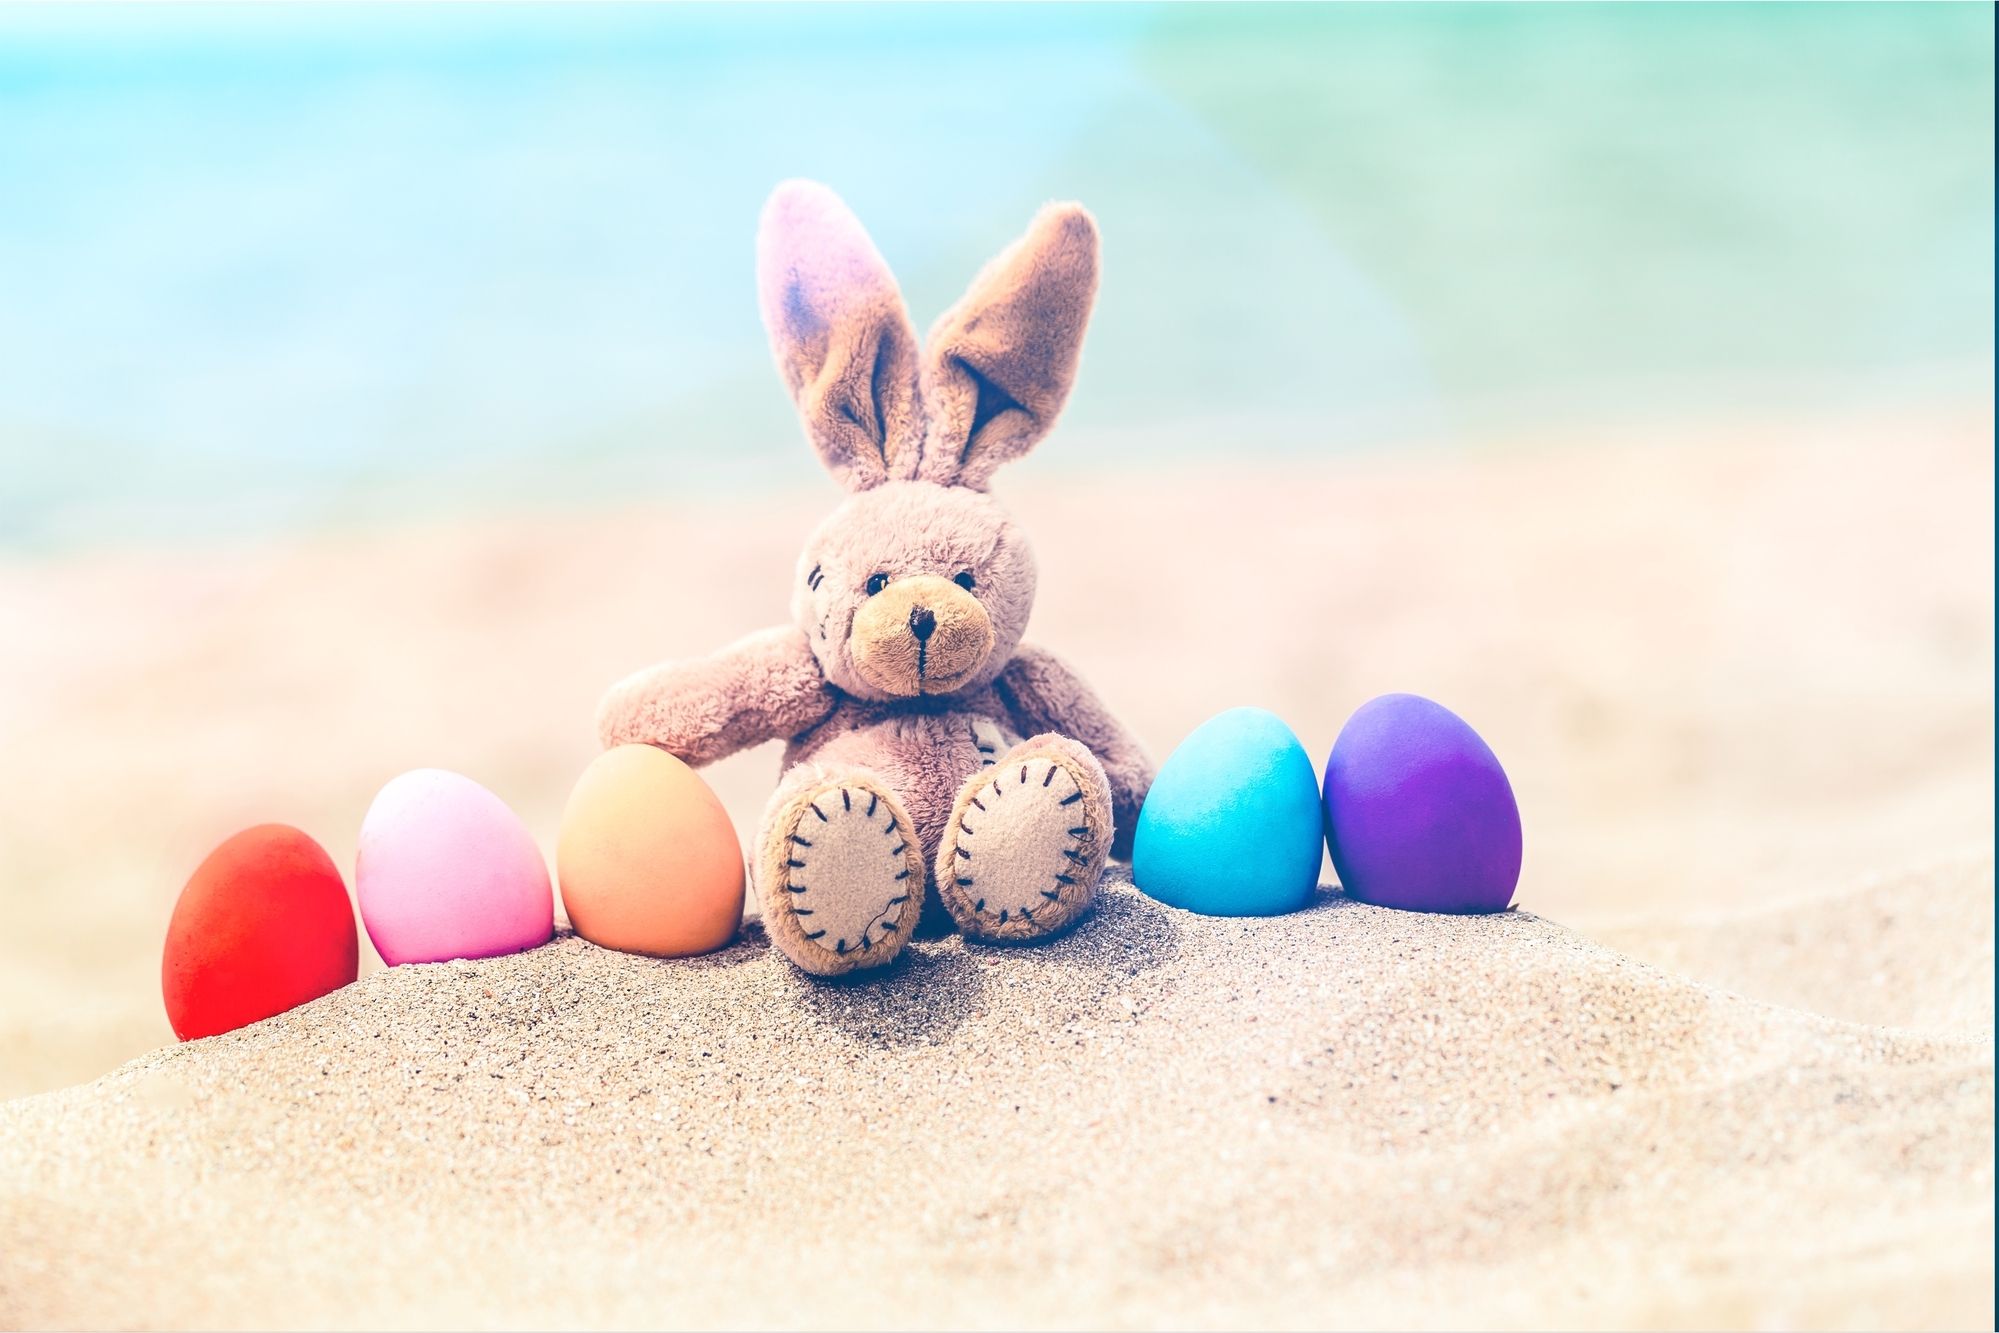 Das Bild zeigt zeigt eine Osterhasen-Stoffpuppe im Sand sitzend mit bunten Eiern neben sich.